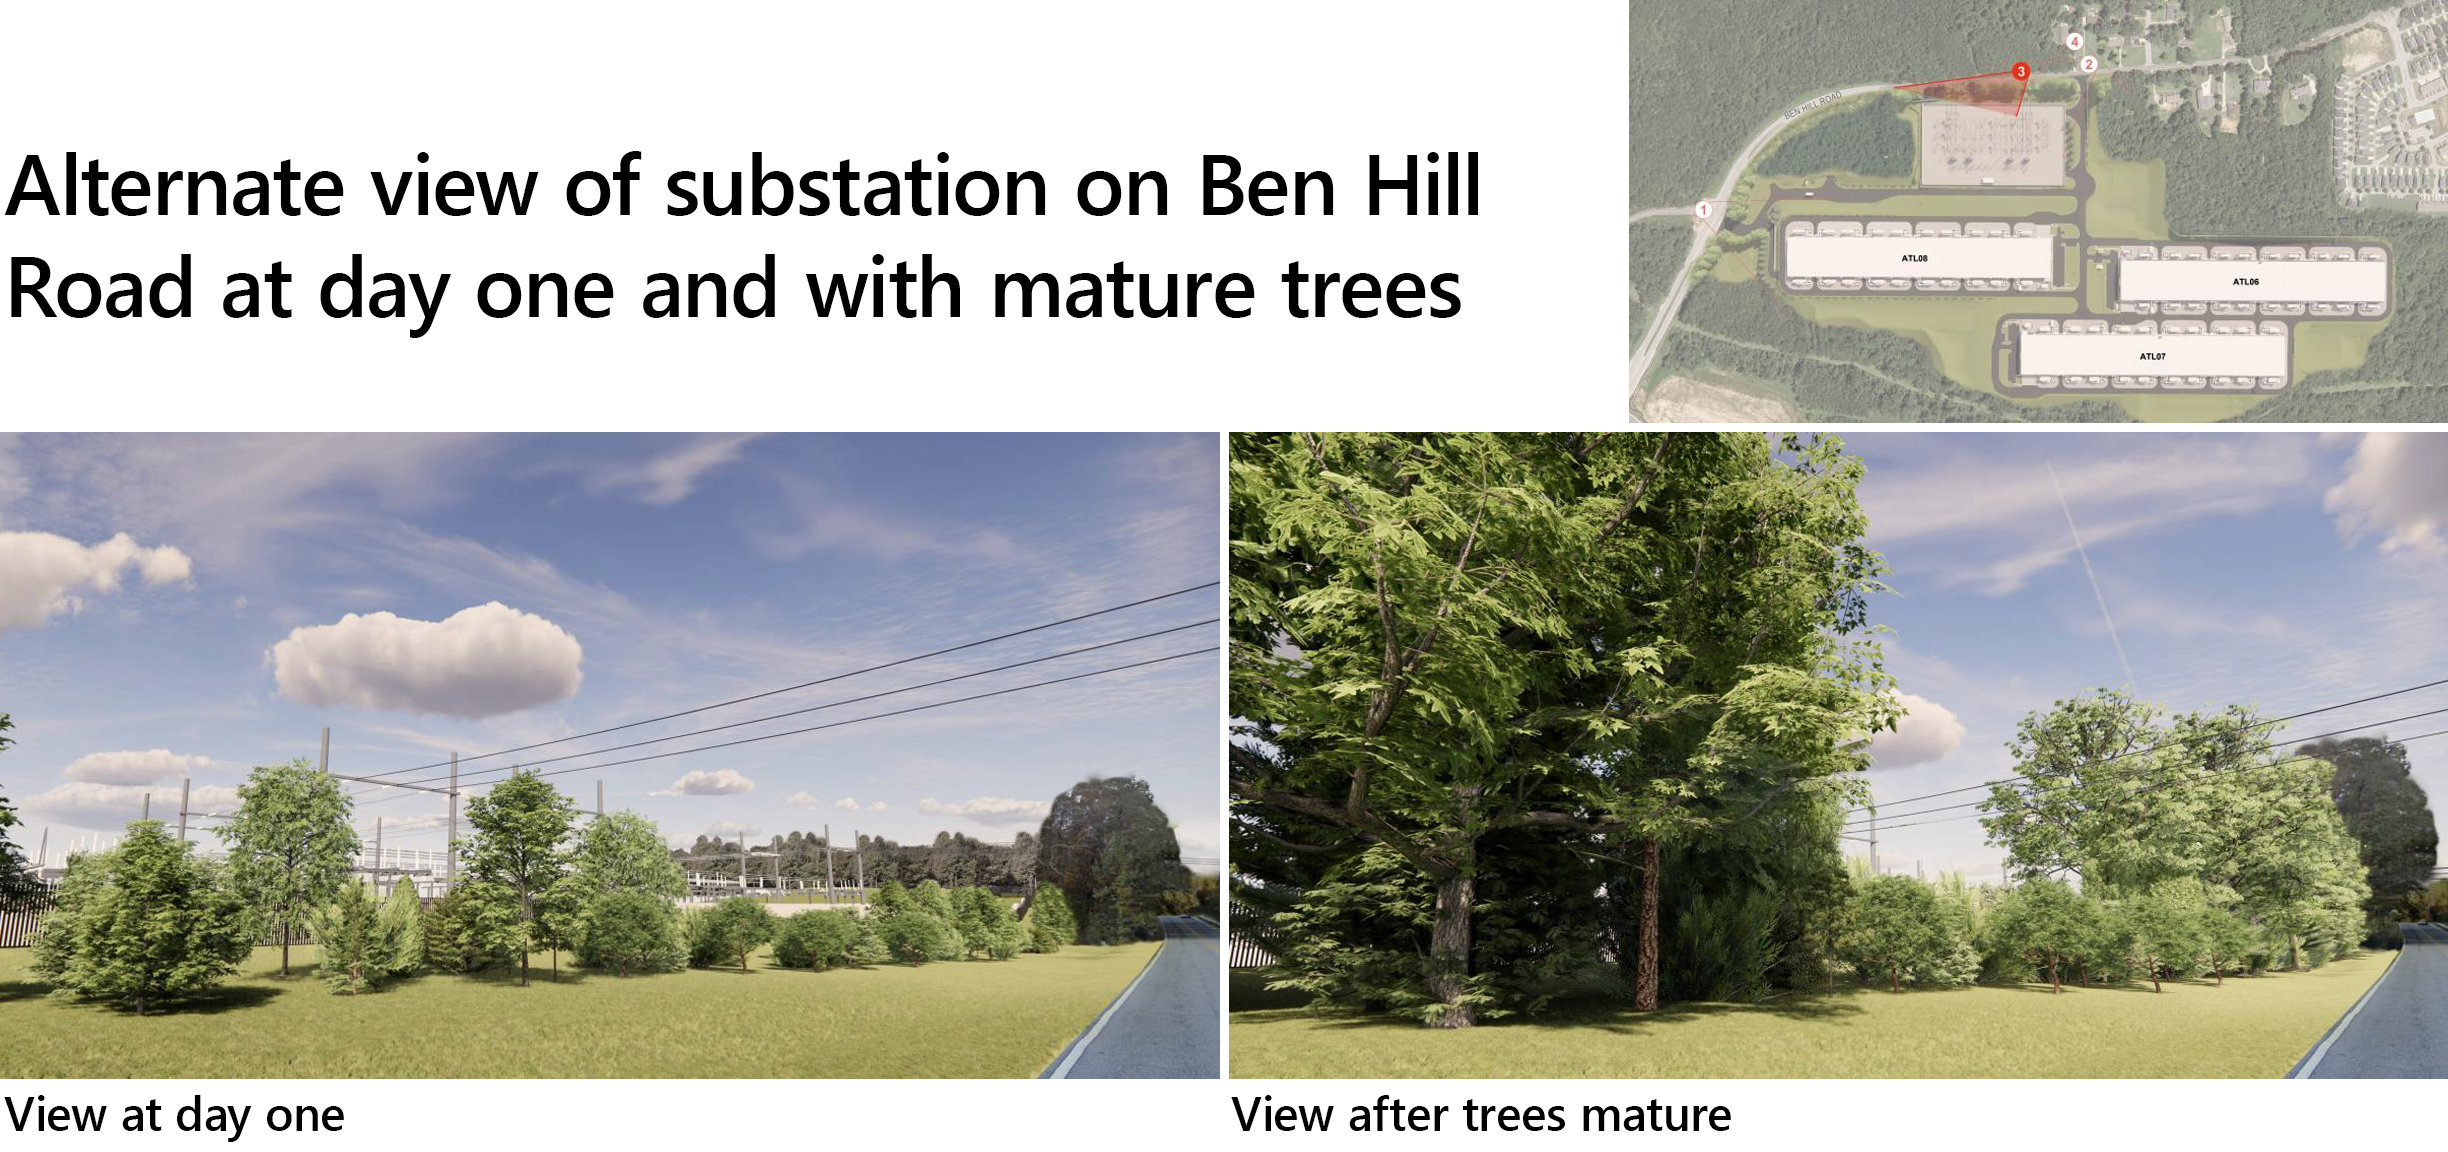 Vista alternativa de la subestación en Ben Hill Road en el primer día y con árboles maduros